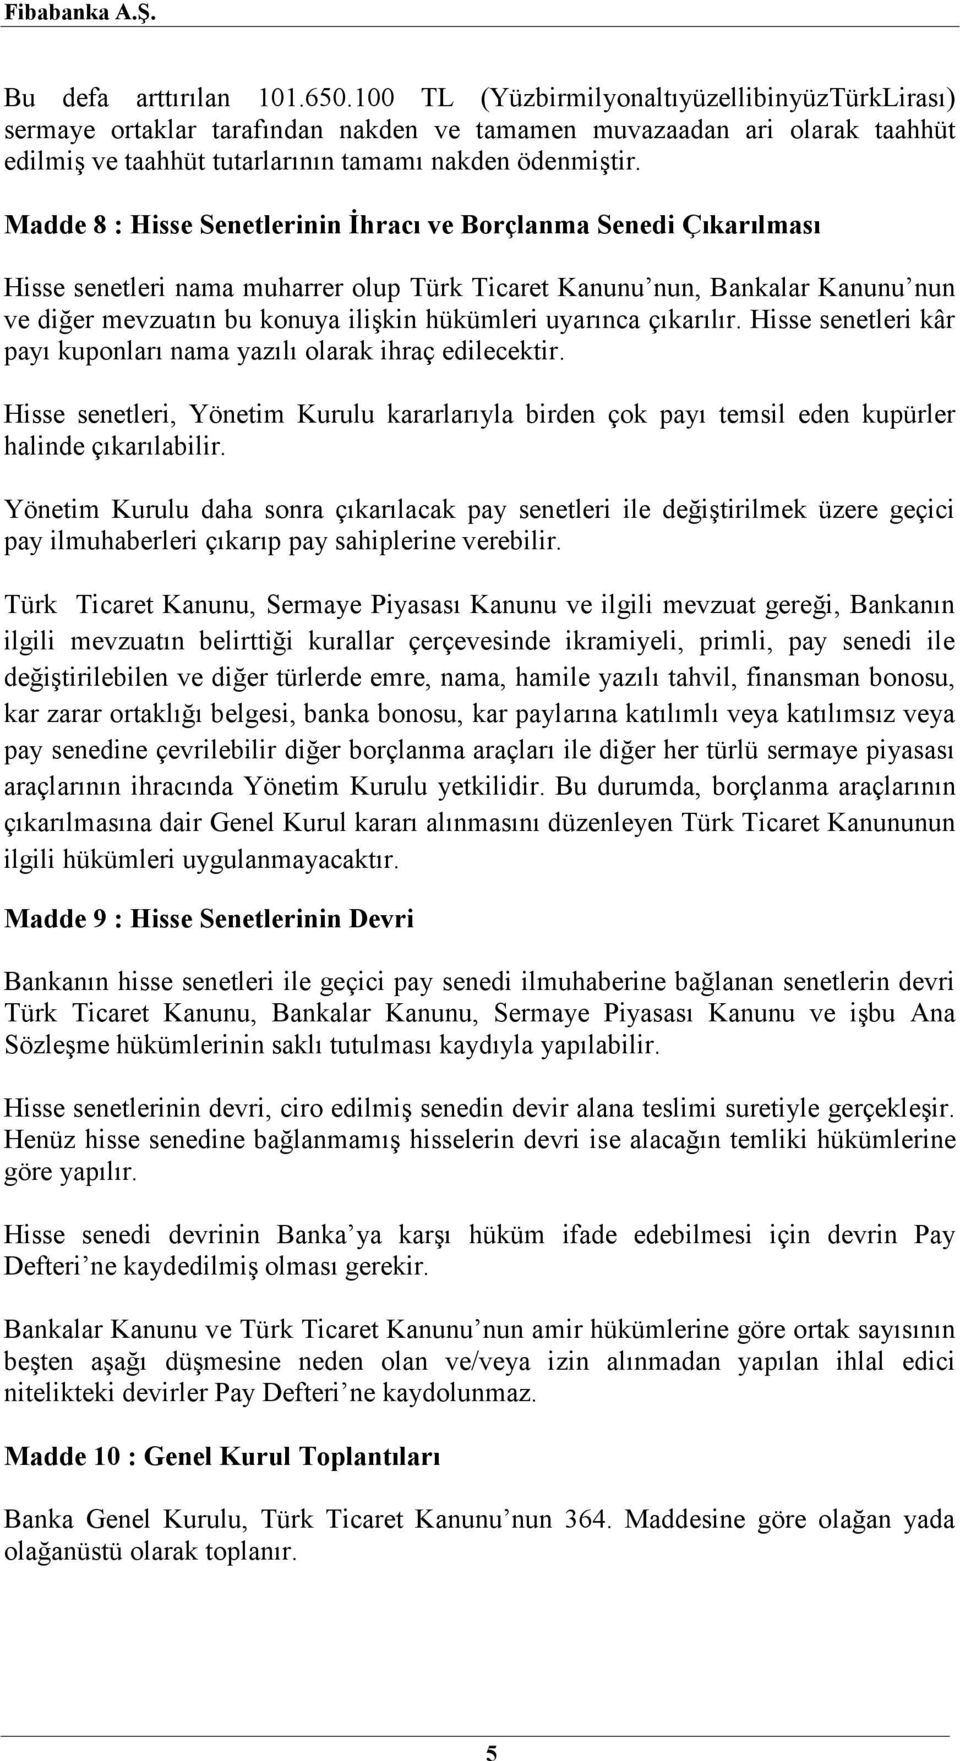 Madde 8 : Hisse Senetlerinin İhracı ve Borçlanma Senedi Çıkarılması Hisse senetleri nama muharrer olup Türk Ticaret Kanunu nun, Bankalar Kanunu nun ve diğer mevzuatın bu konuya ilişkin hükümleri